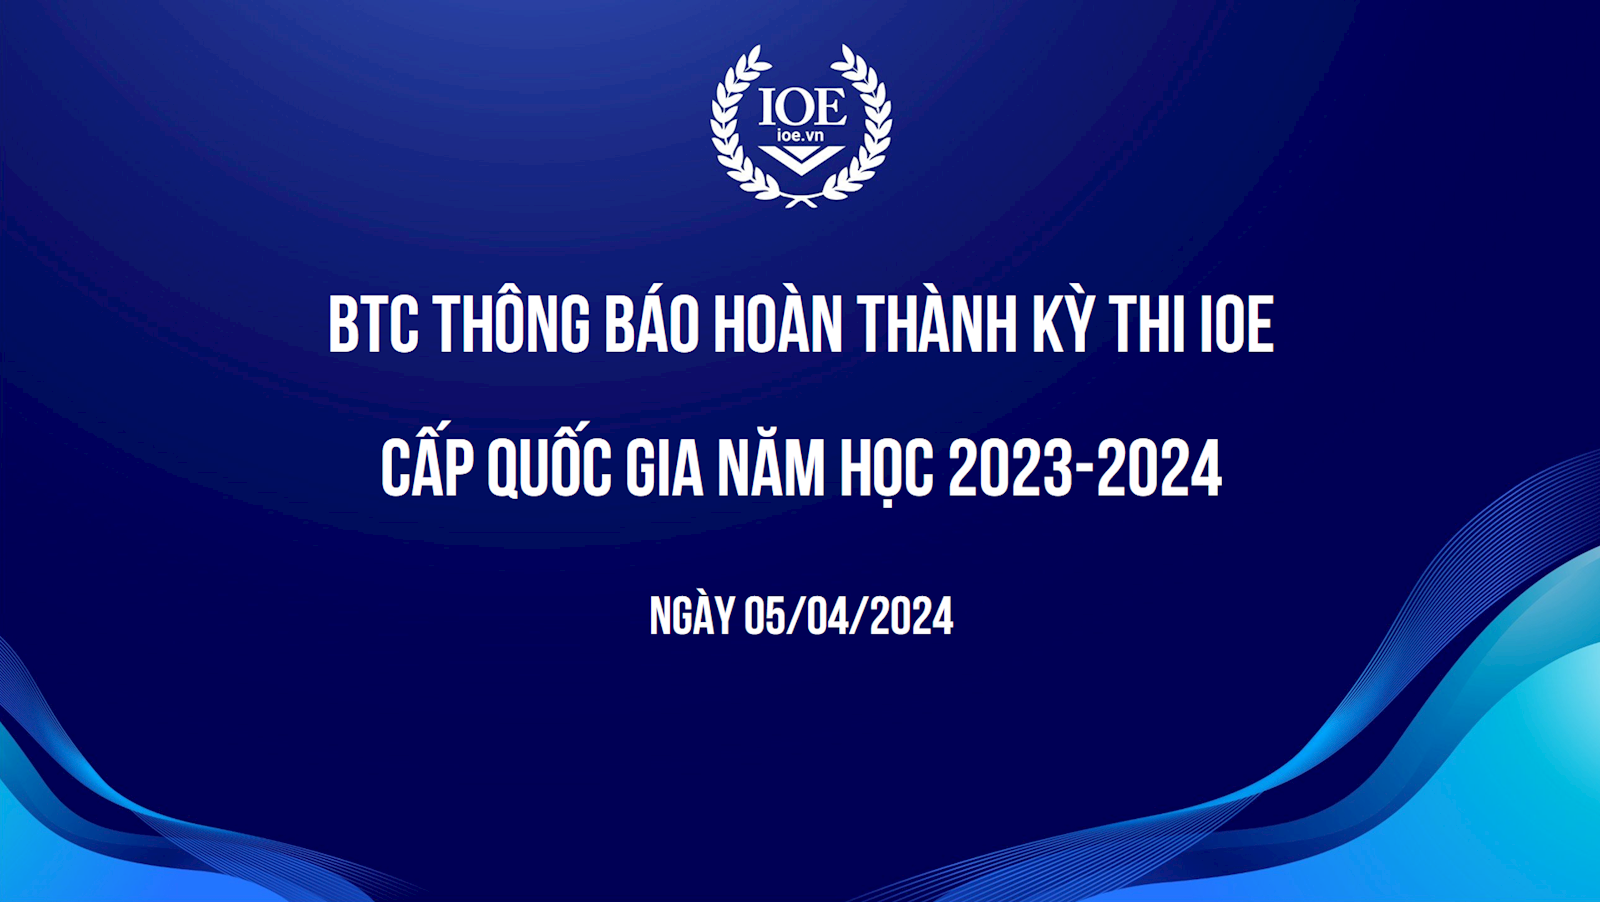 BTC thông báo hoàn thành kỳ thi IOE cấp quốc gia năm học 2023-2024